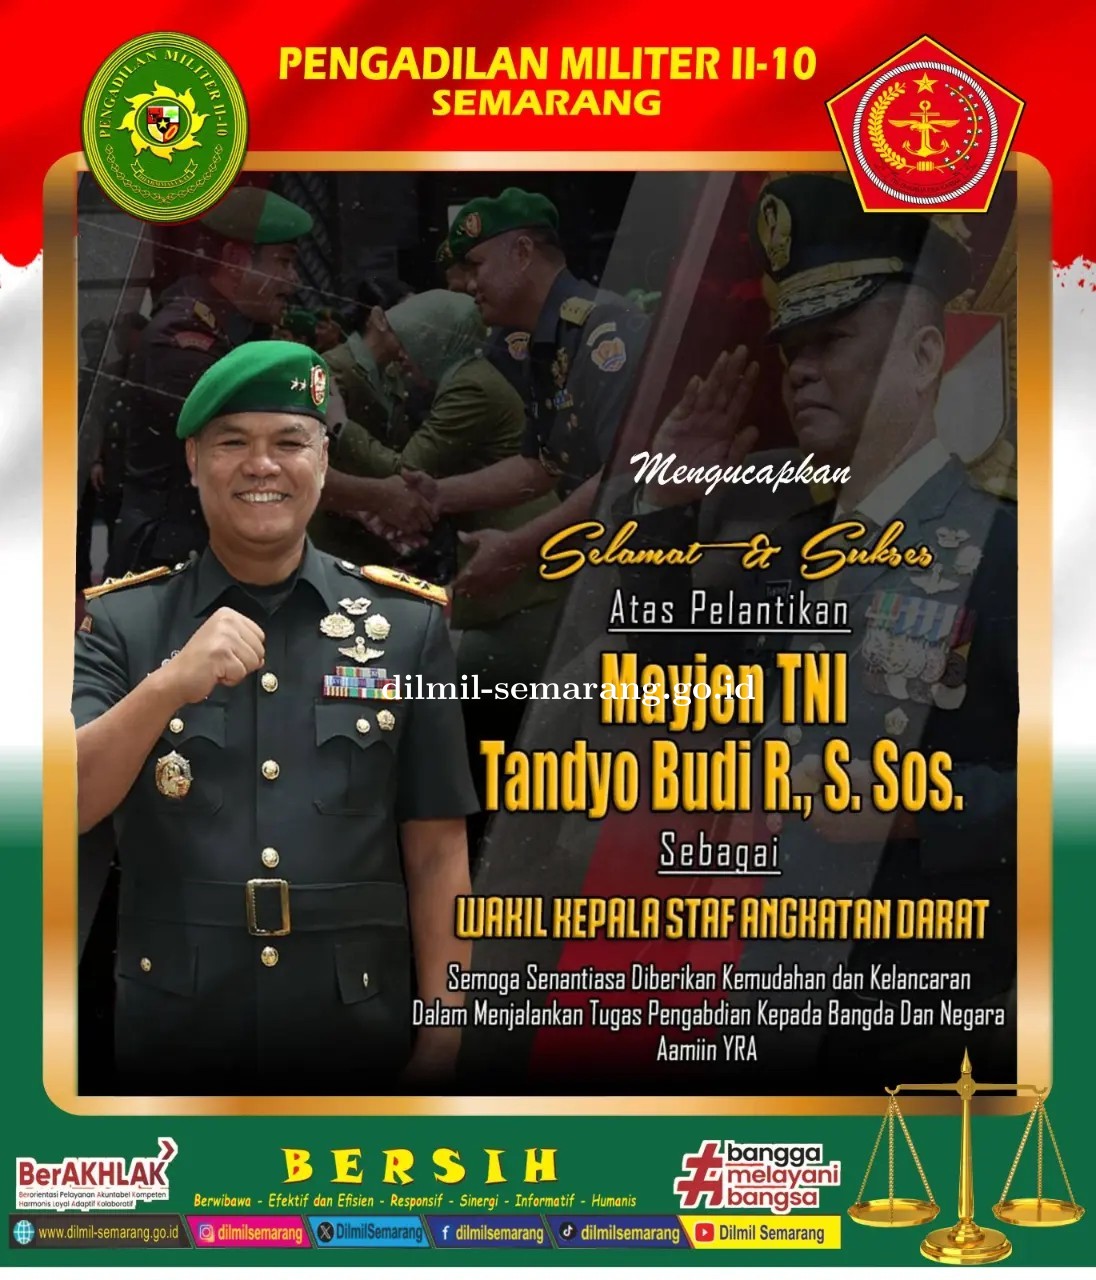 Selamat dan Sukses atas pelantikan Mayjen TNI Tandyo Budi R, S.Sos.